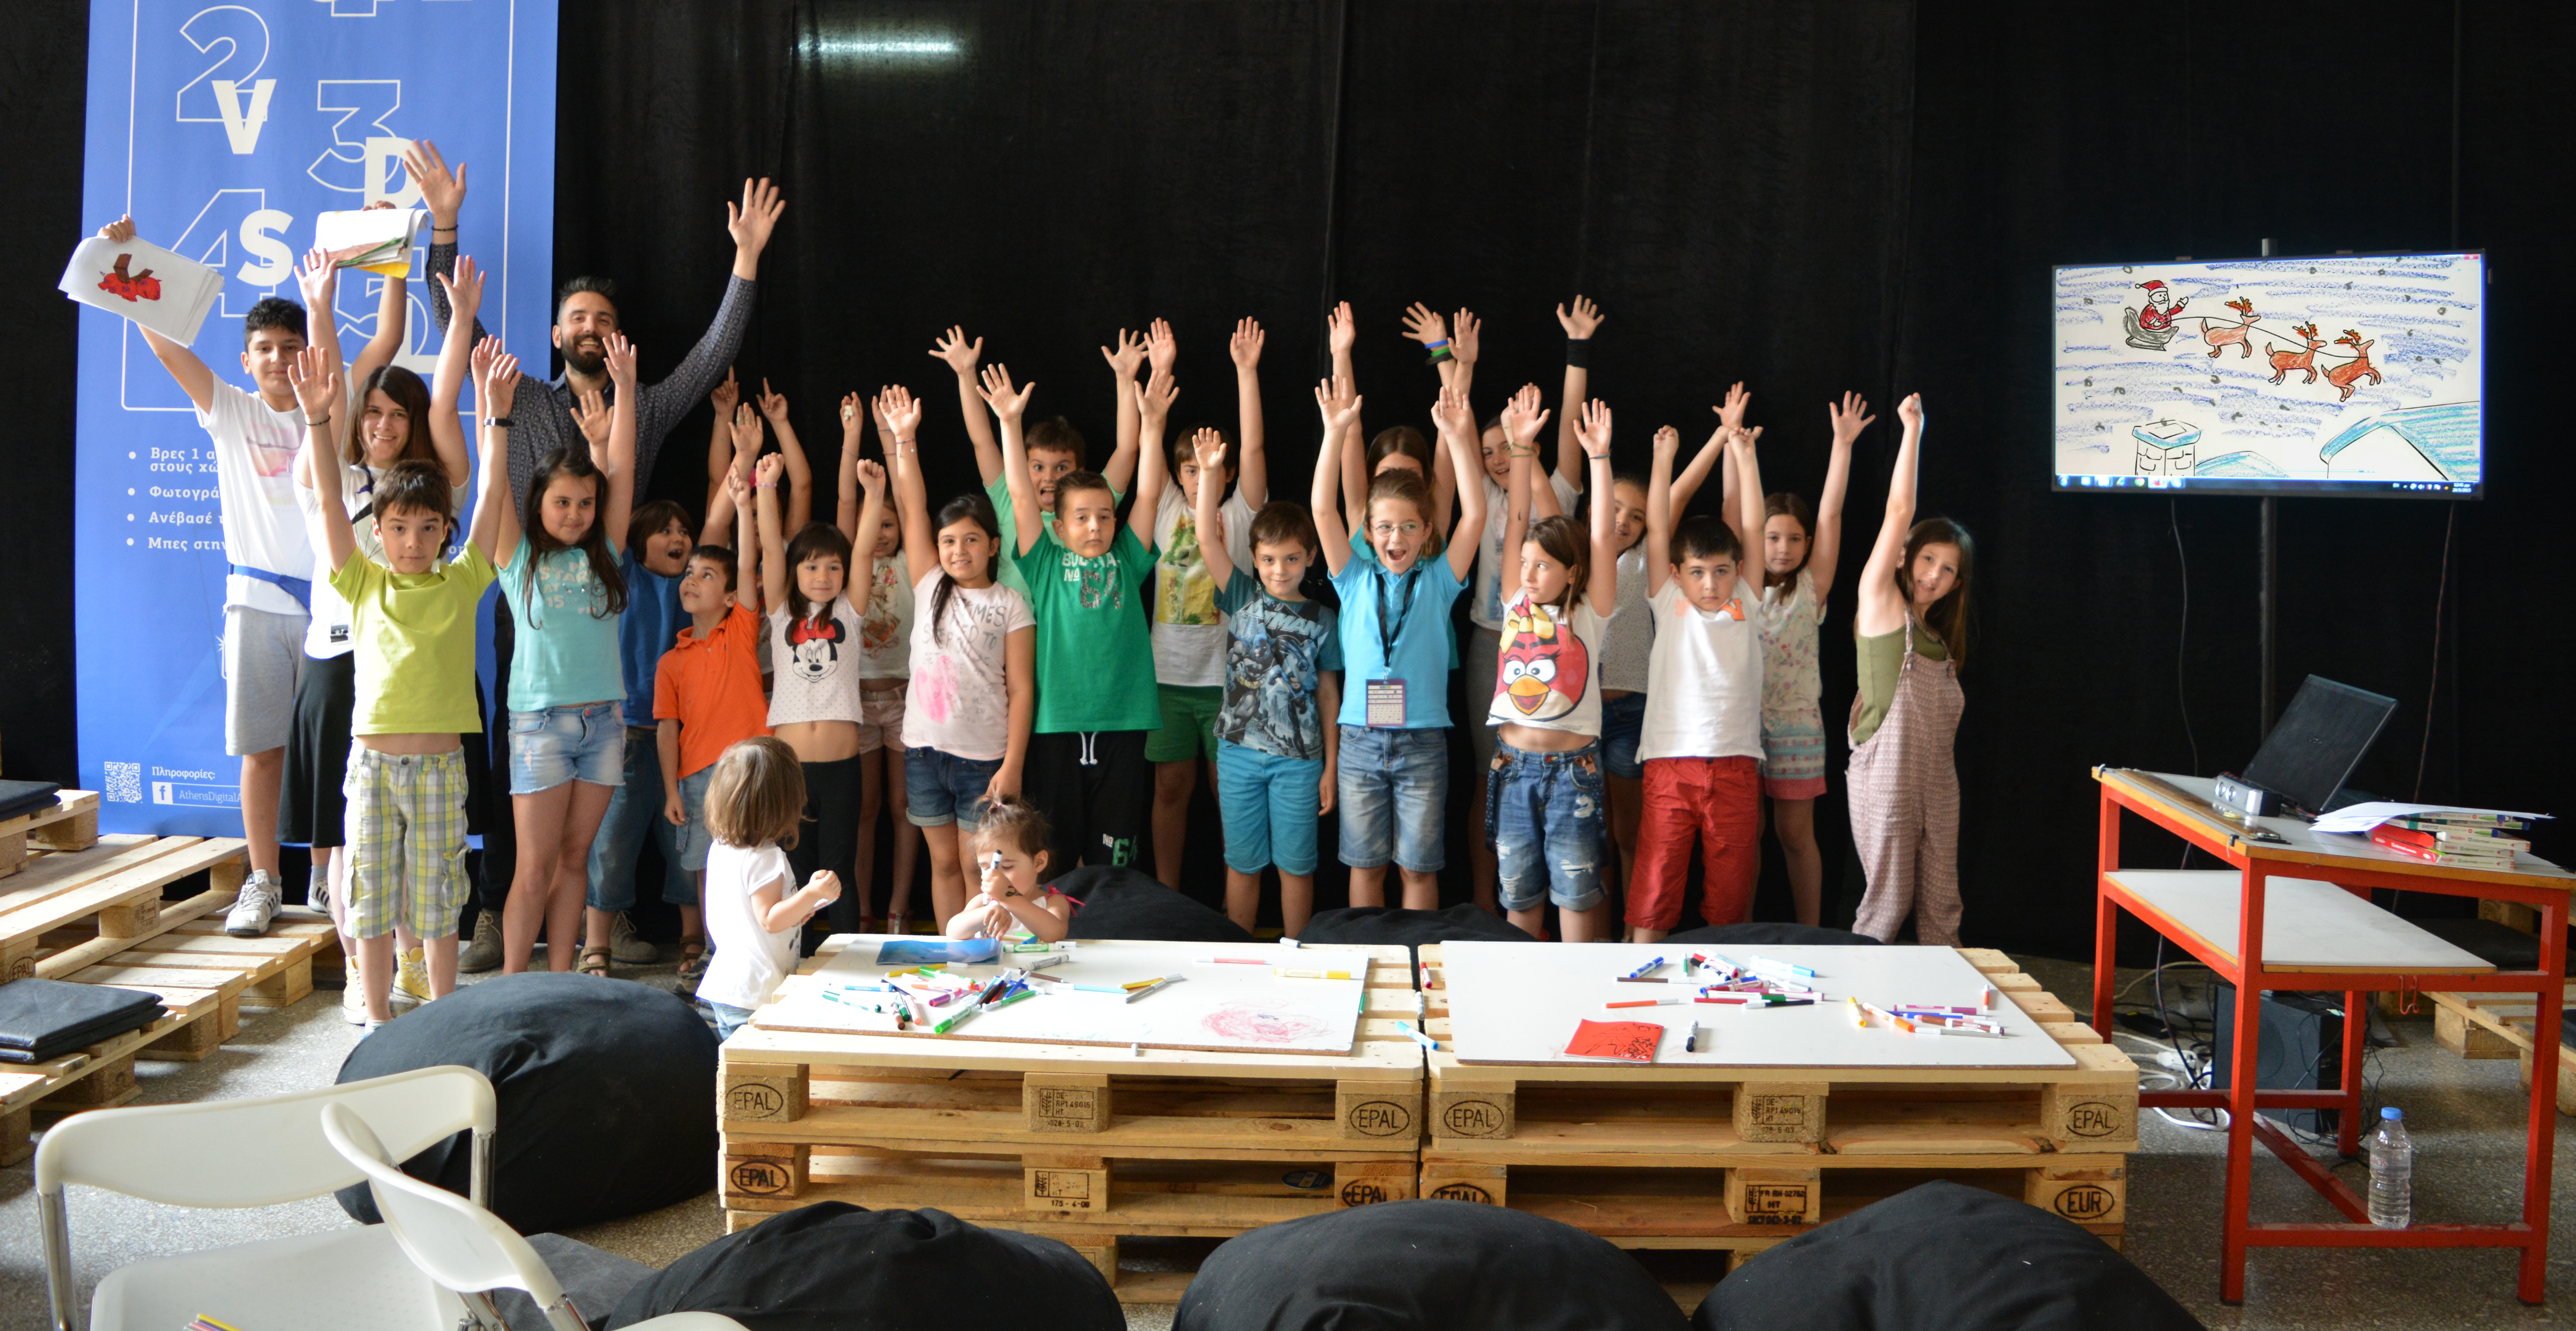 Τα παιδιά ζωντανεύουν το αστέρι τους. Παιδικό εργαστήριο δημιουργίας κινούμενης εικόνας στην πλατεία Κοτζιά